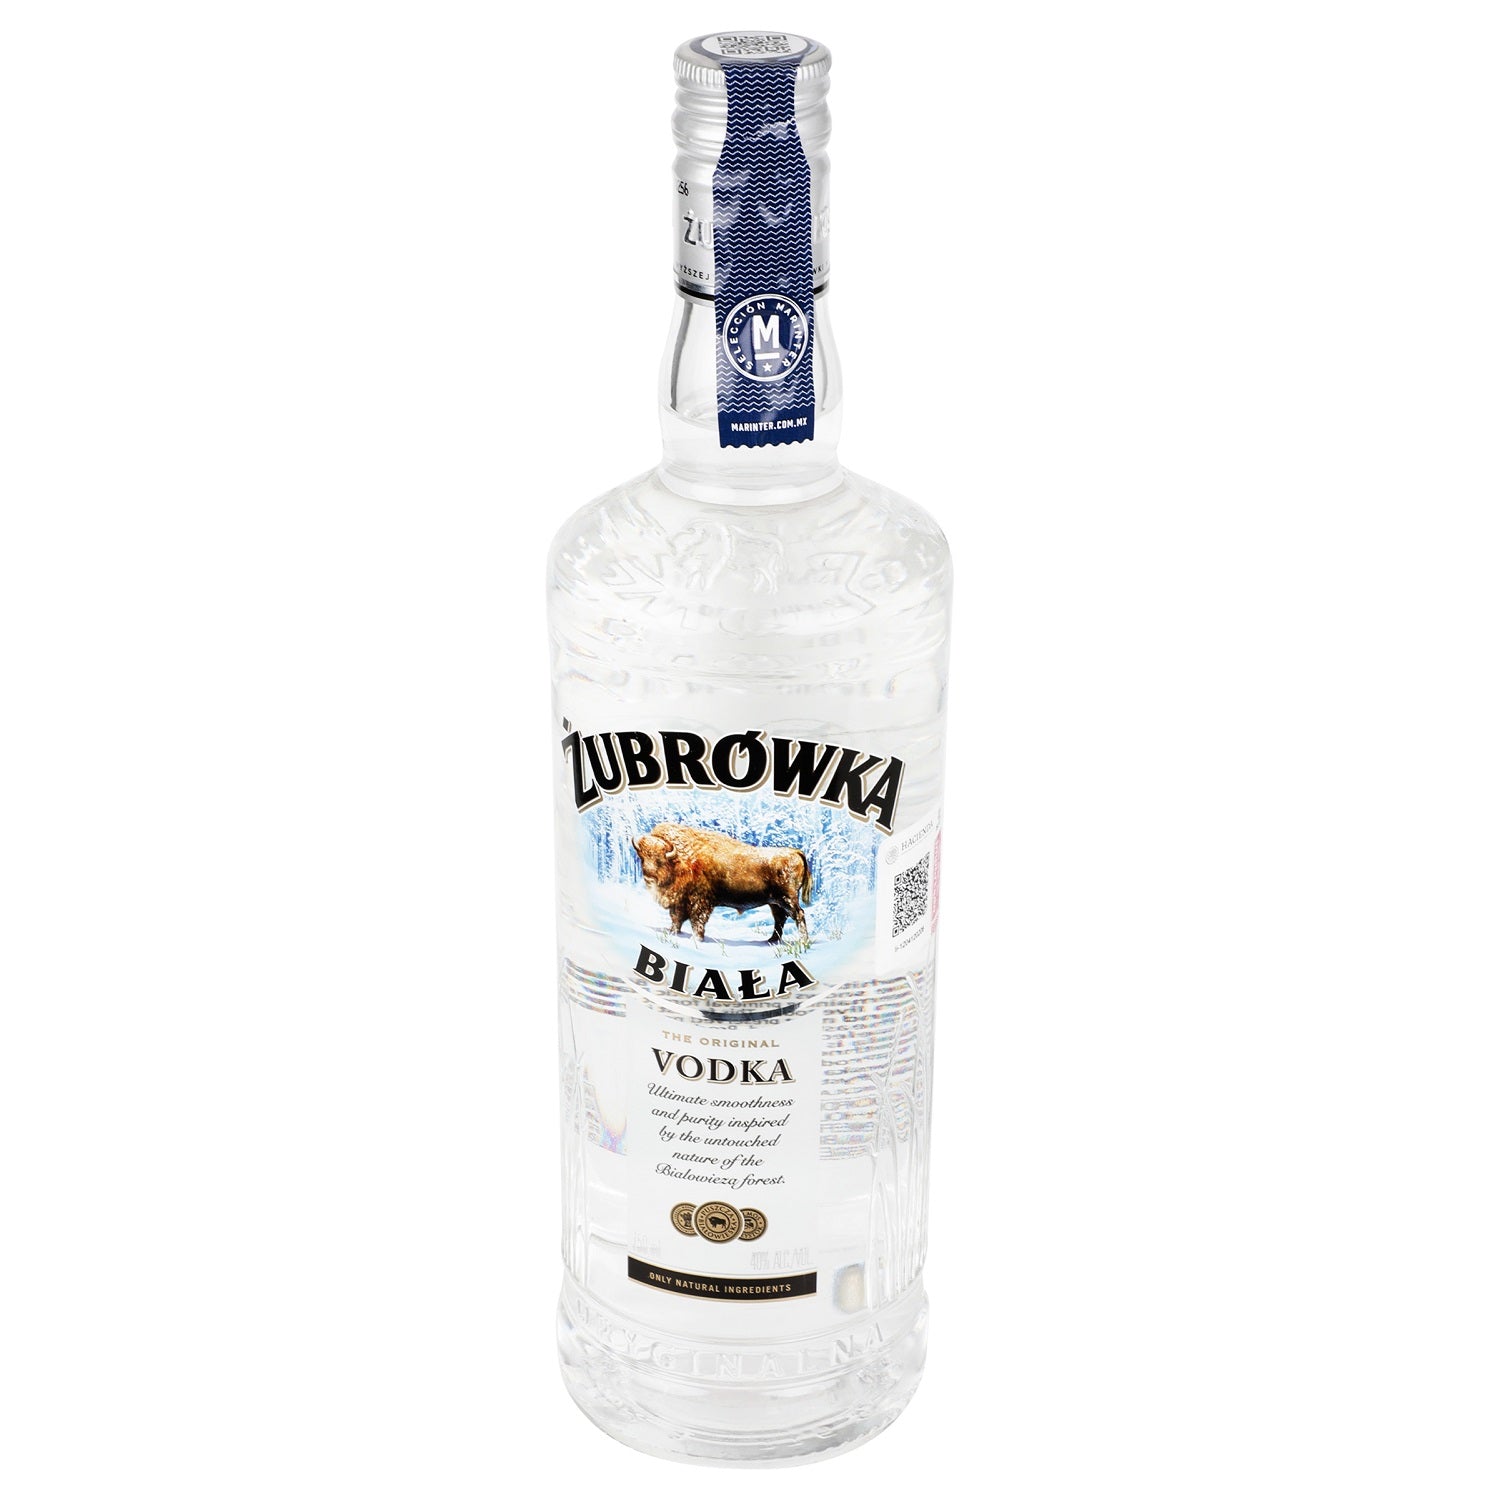 Vodka Zubrowka Biala de 750 ml - Polonia